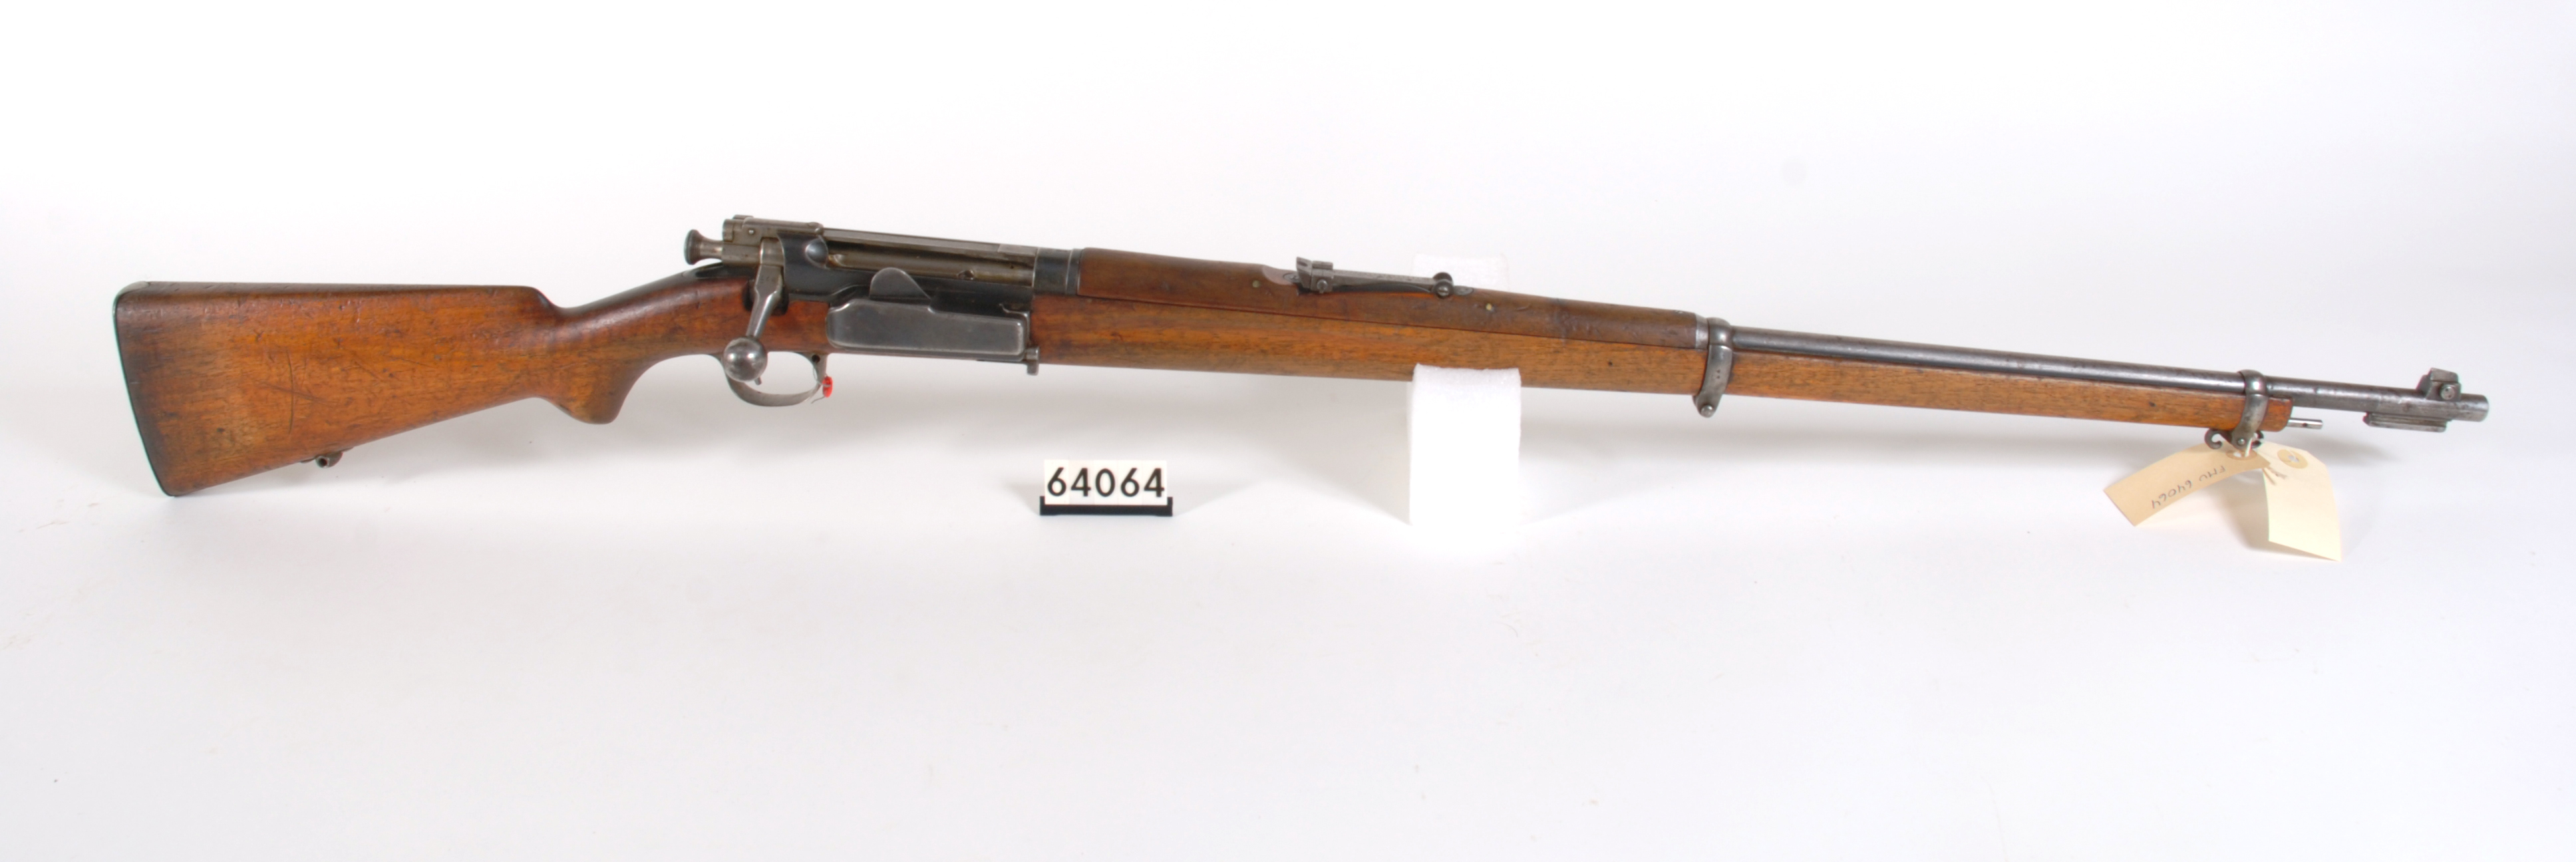 ./guns/rifle/bilder/Rifle-Kongsberg-Krag-M1894-FMU.064064c.jpg